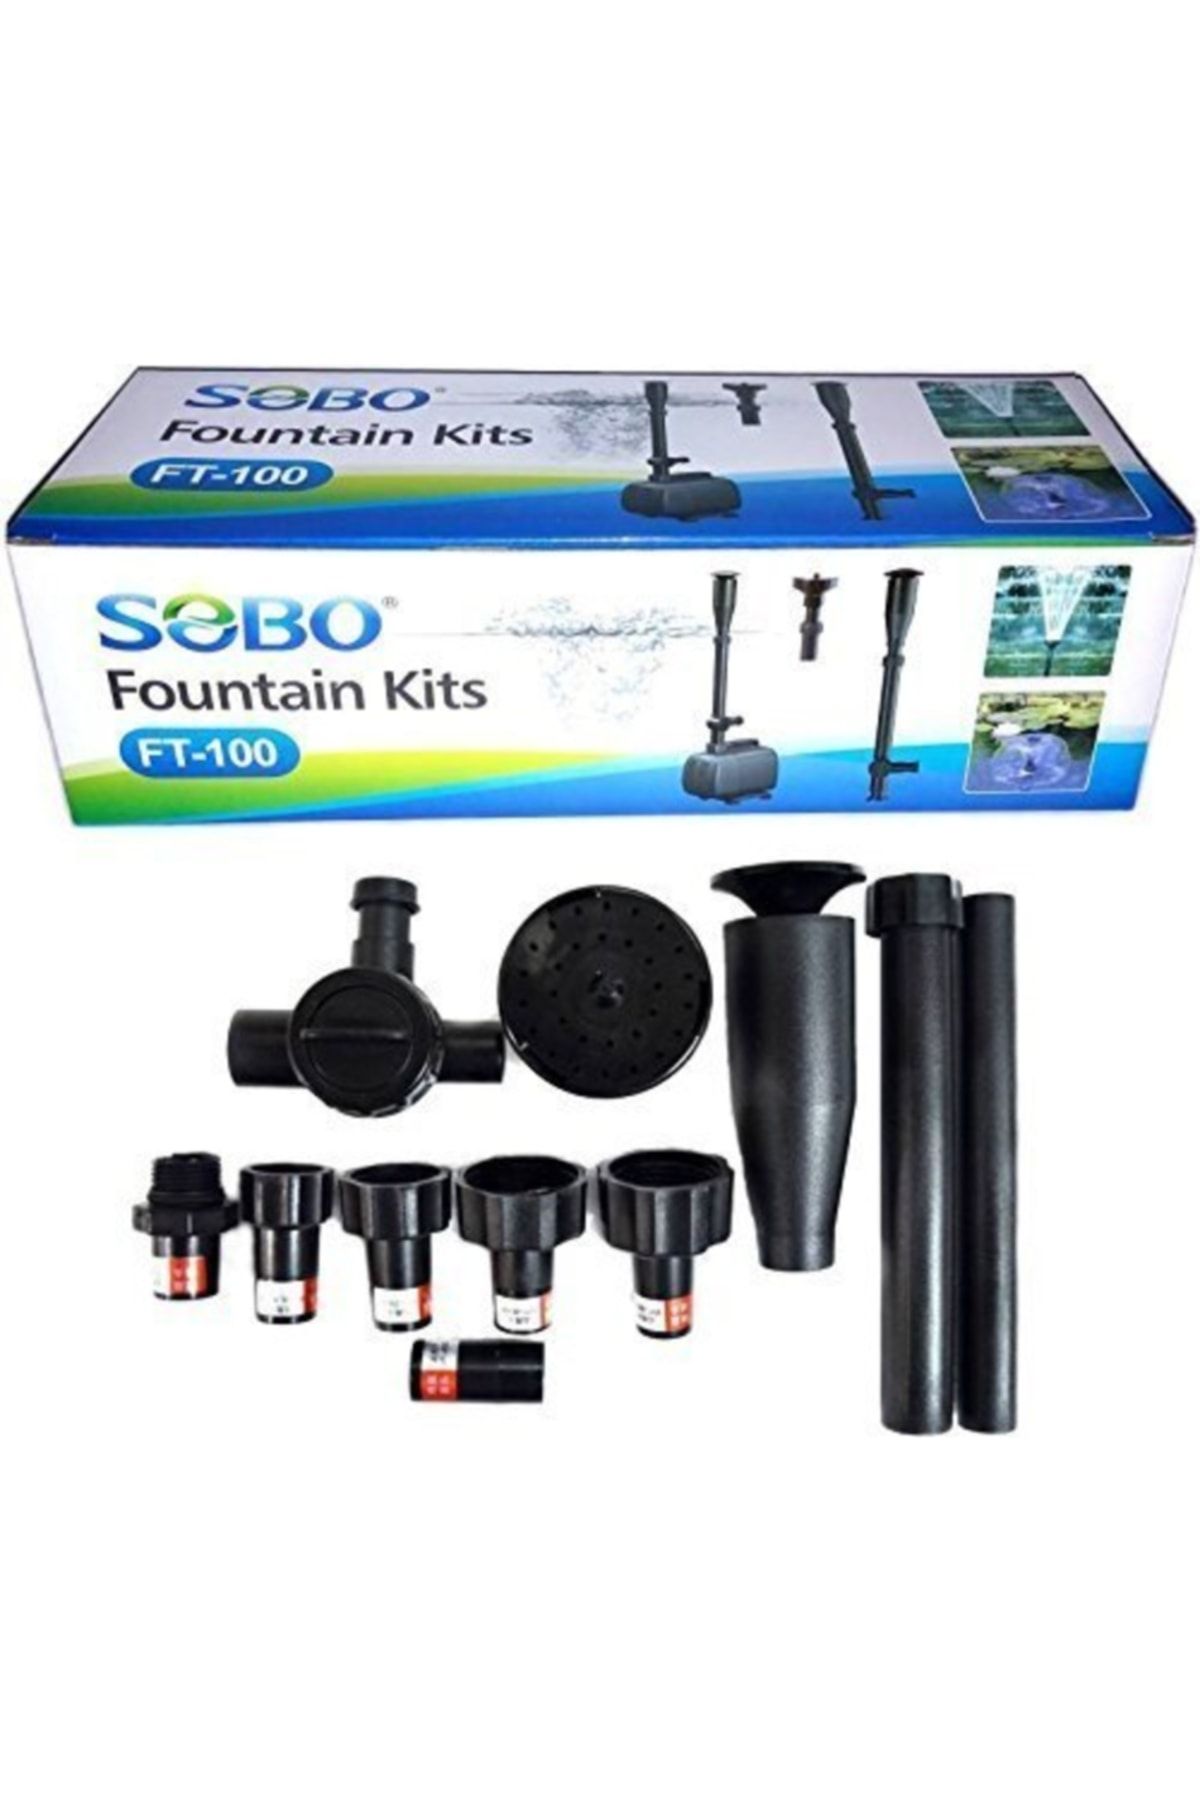 Sobo Ft-100 Fountain Kits